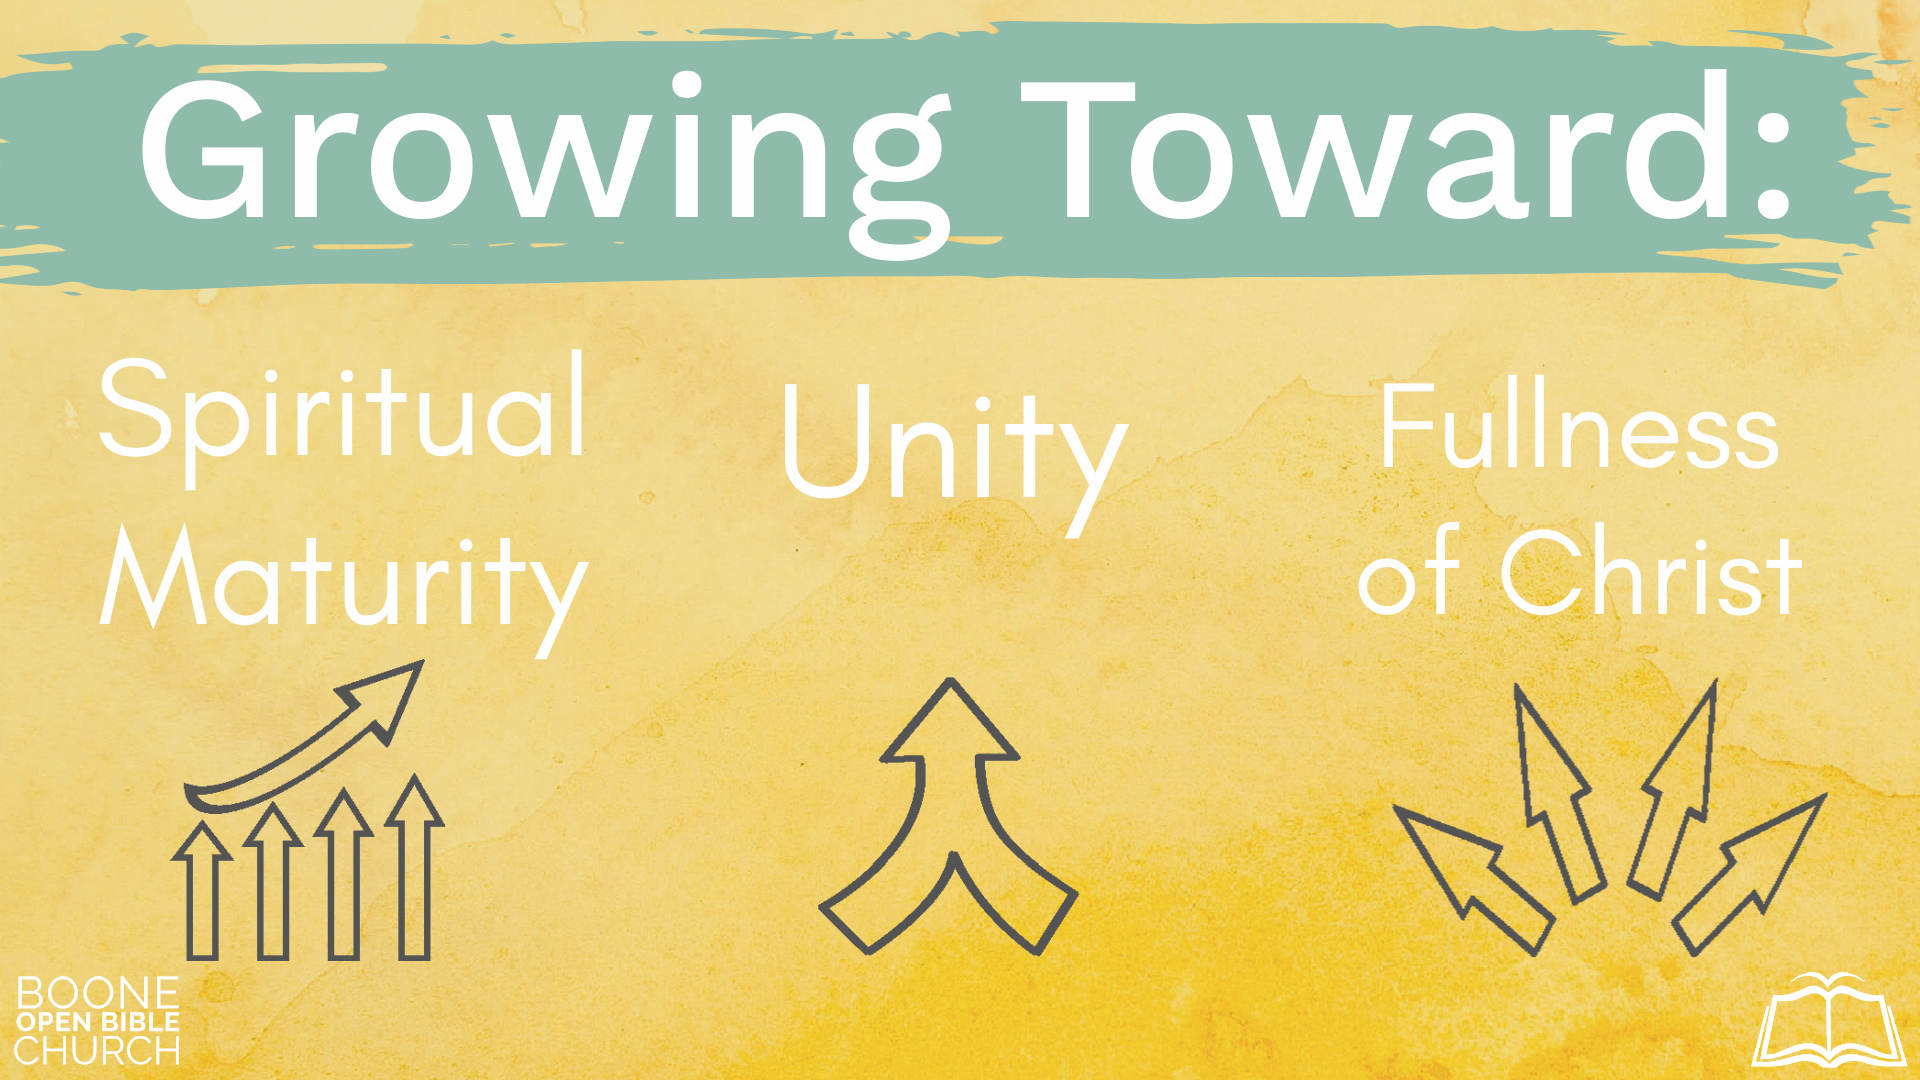 Growing Toward: Spiritual Maturity, Unity, Fullness of Christ